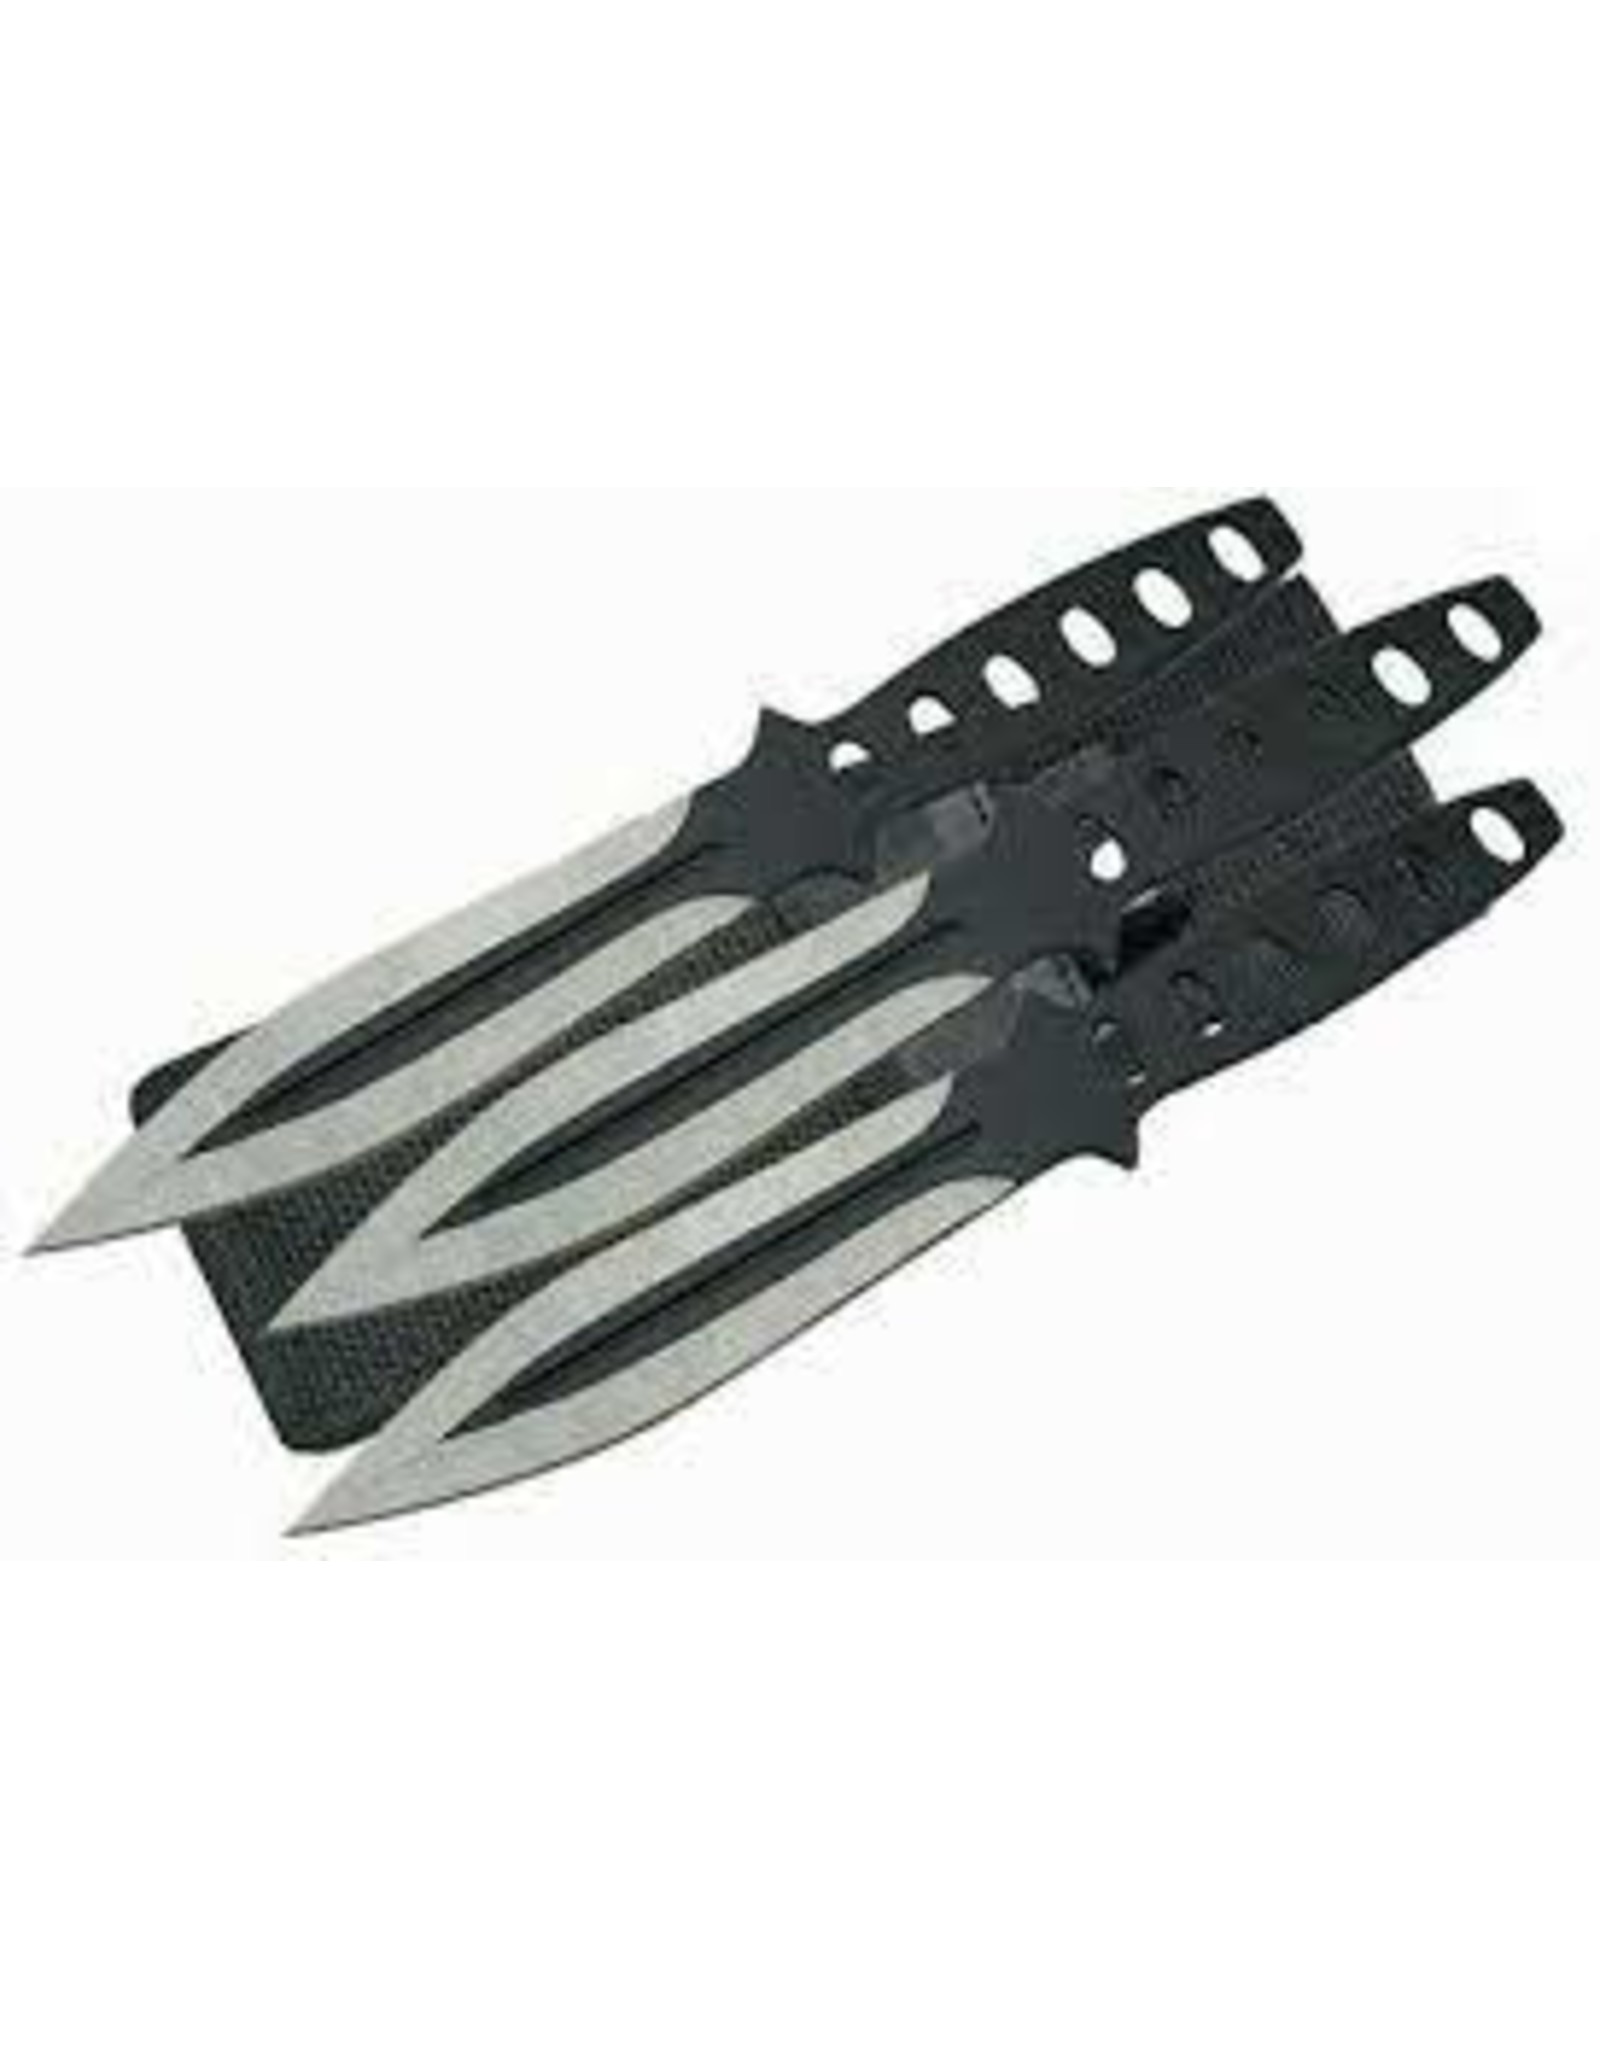 UNITED CUTLERY UC BLACK STREAK TRIPLE THROWER KNIFE 3PK W/ SHEATH